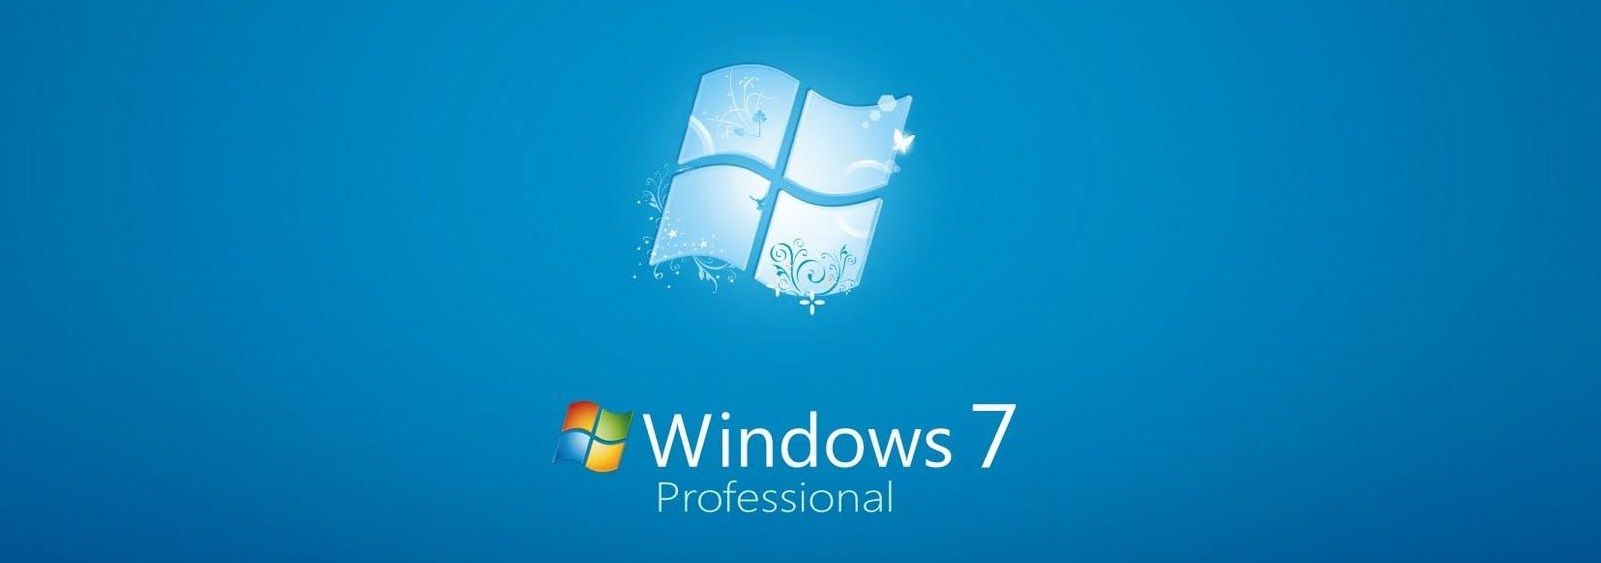 Windows 7 ha caducado: ¿Qué implica para las asociaciones?